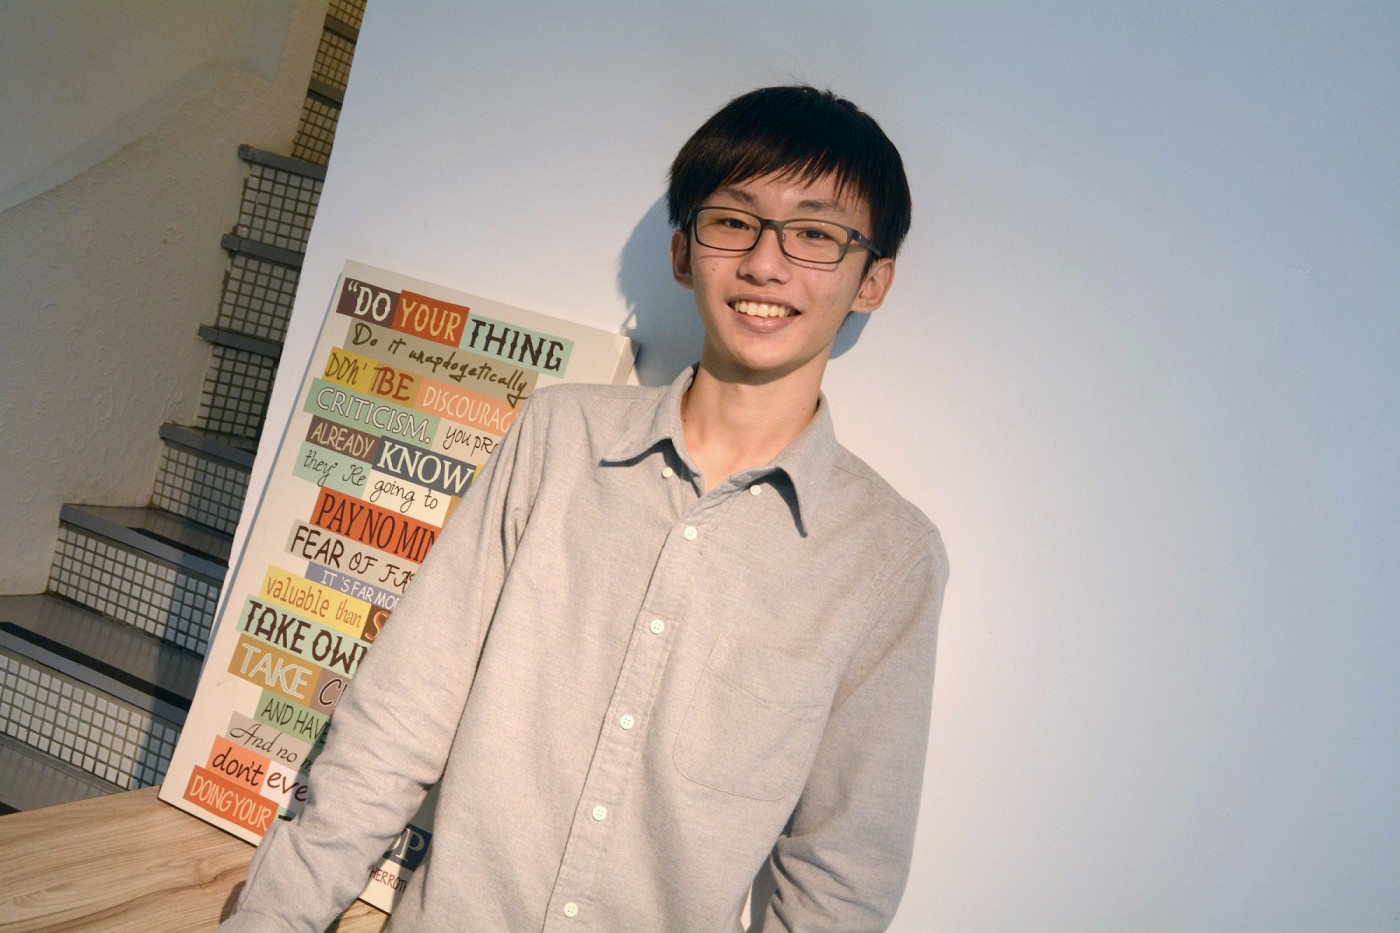 他15歲還在讀國中就成為矽谷的搶手工程師，出國回來「只想問台灣人一個問題」…